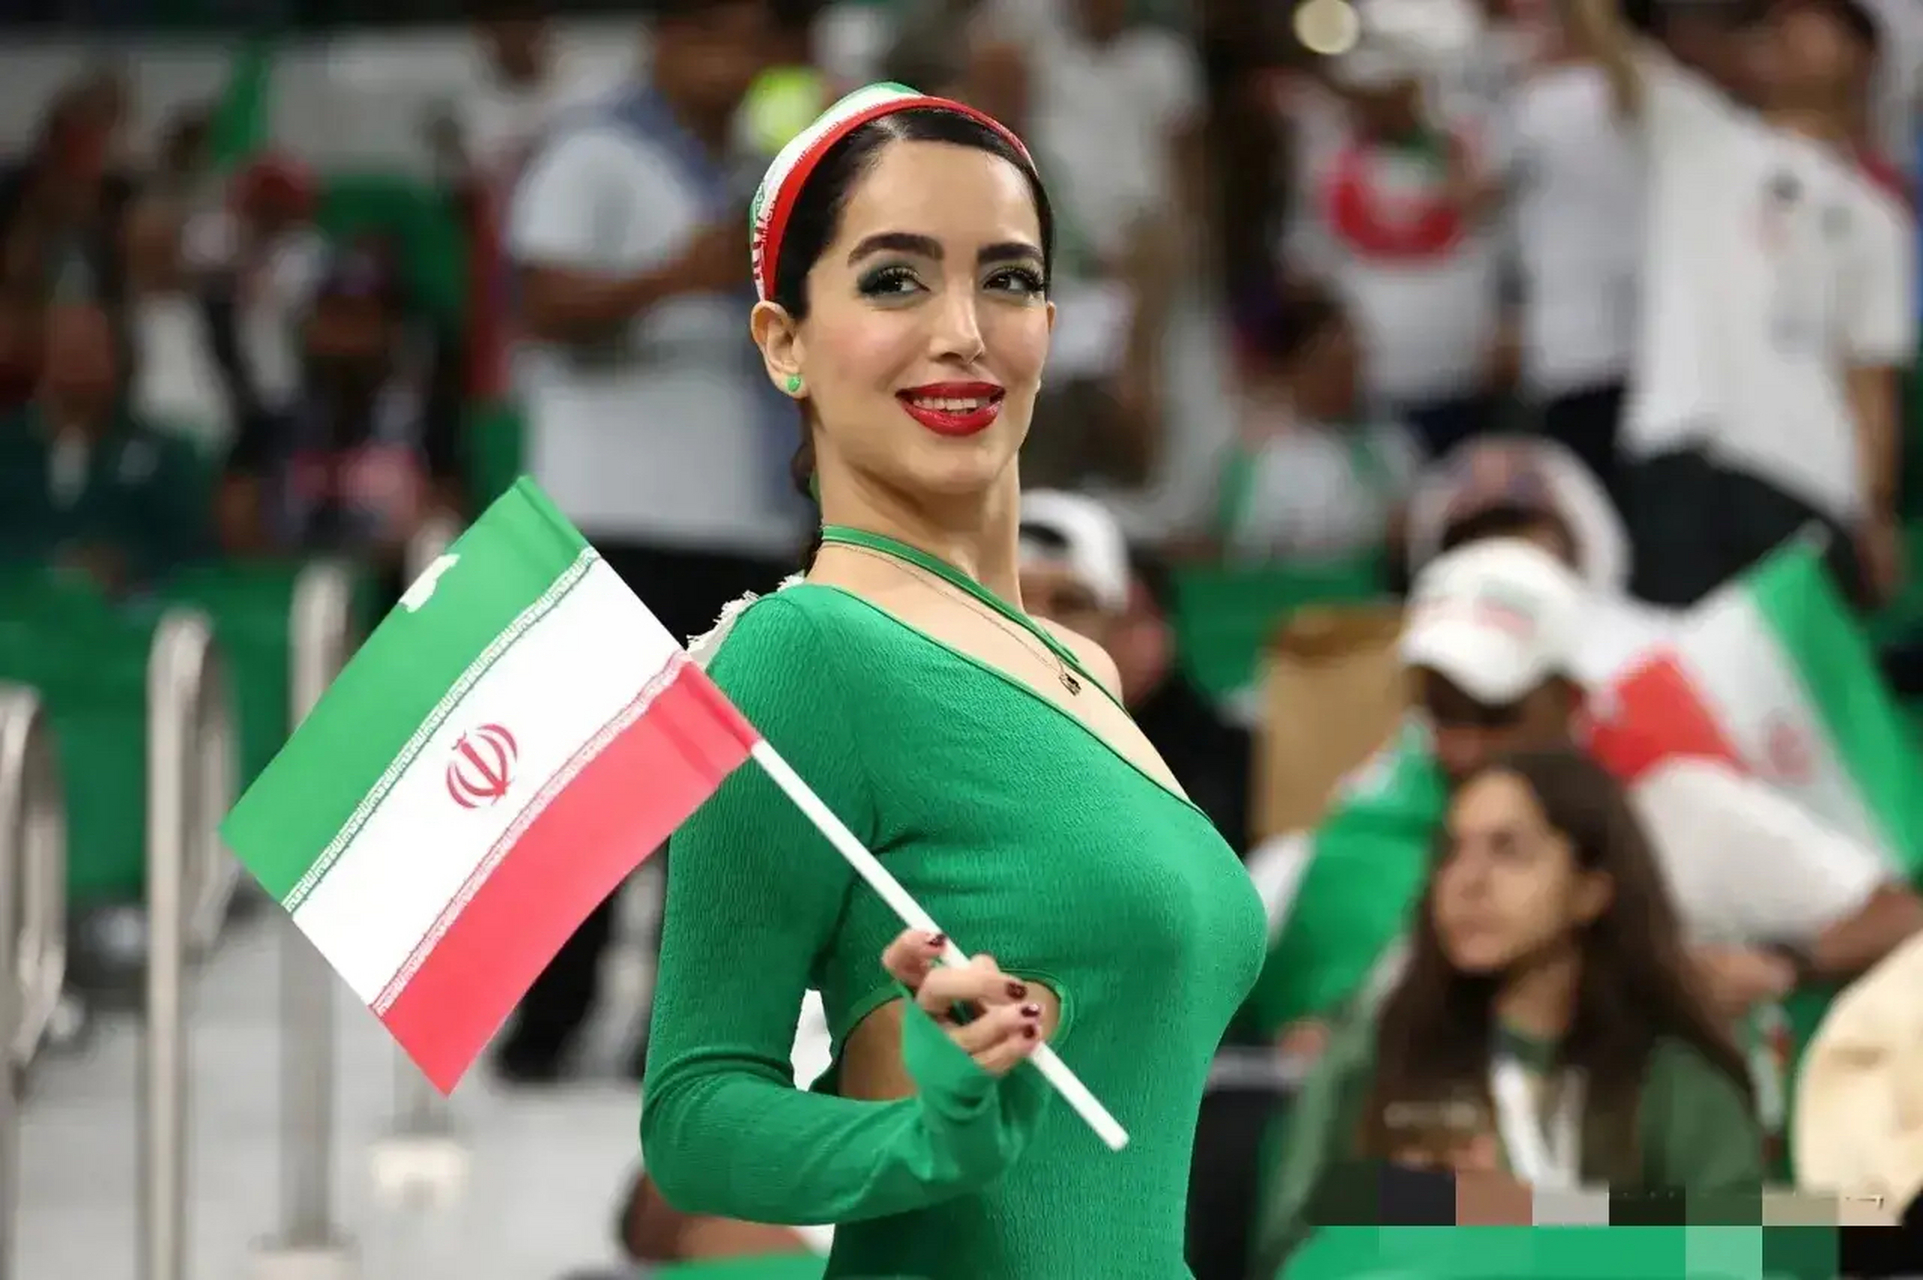 动态创作月 伊朗女球迷都这么开放了吗?